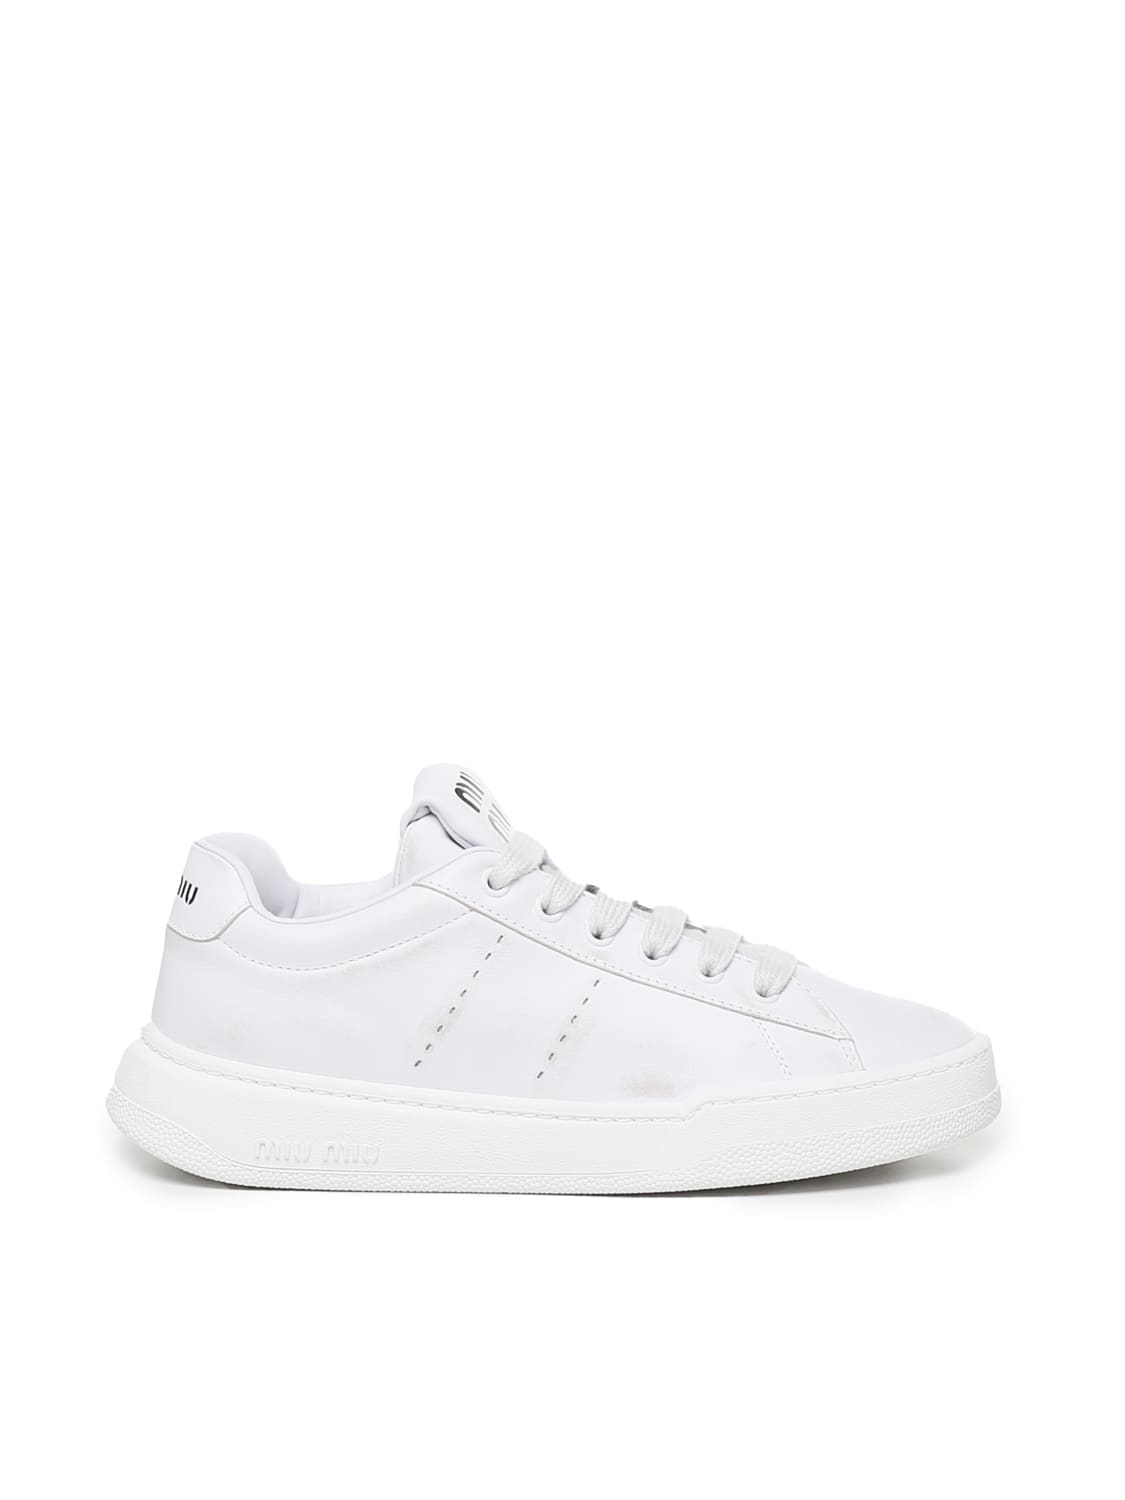 Miu Miu Sneakers In Calfskin In White